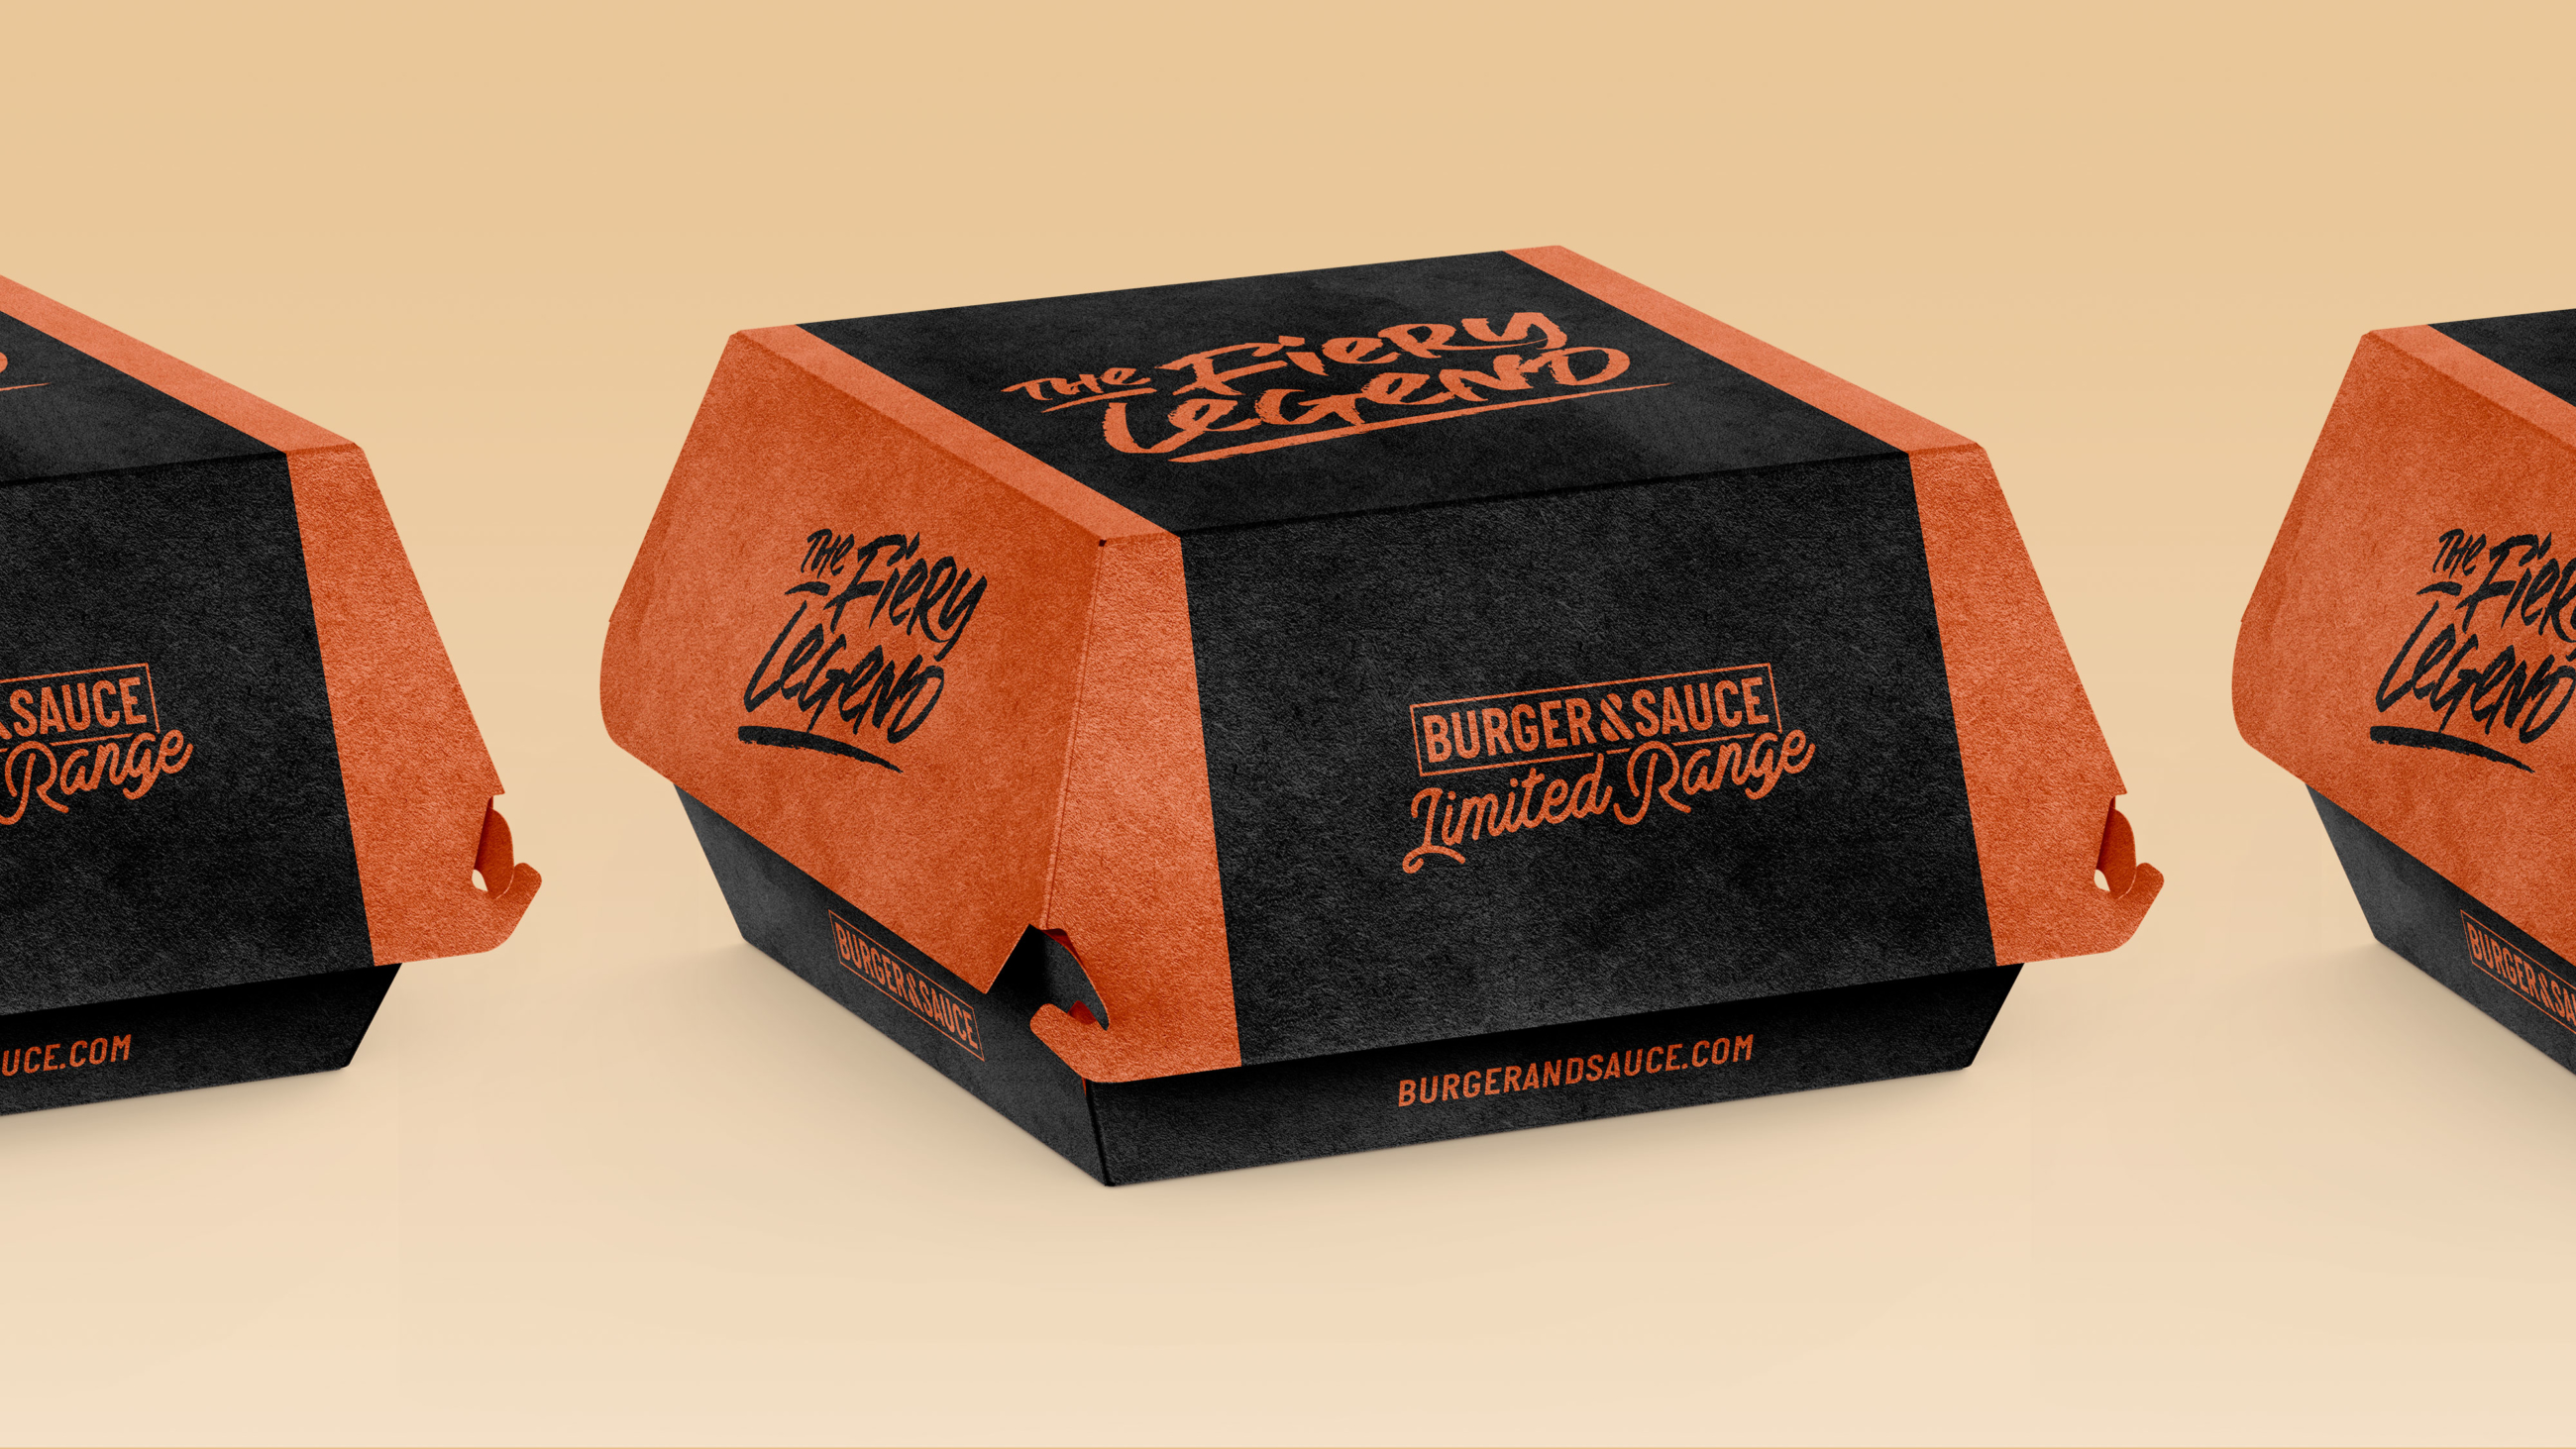 Burger & Sauce Burger Box Packaging Range